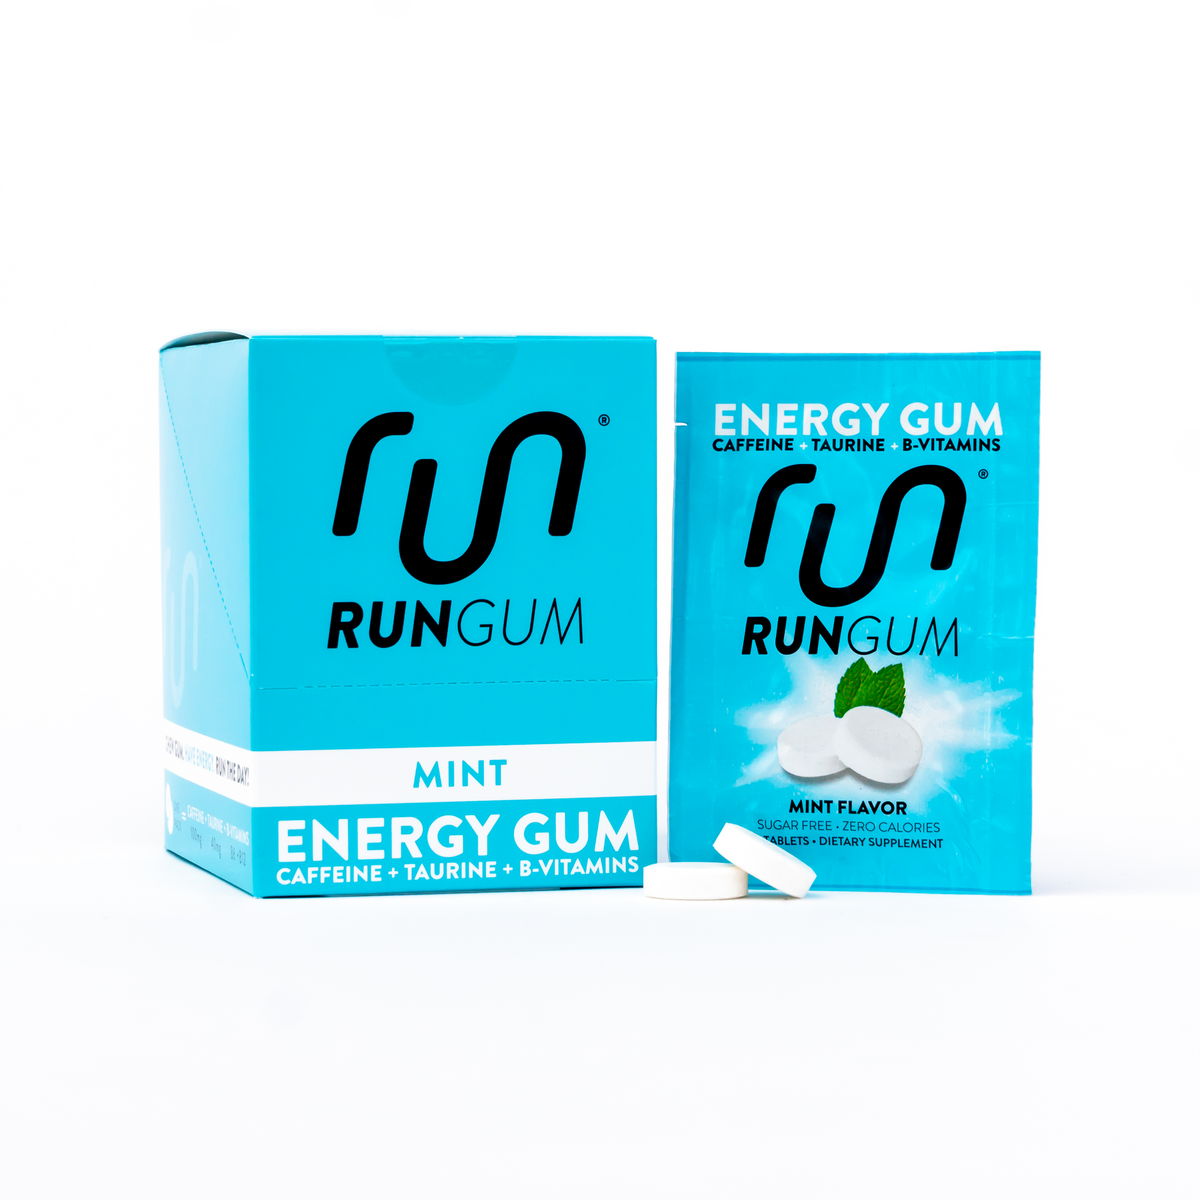 Energy Gum Original